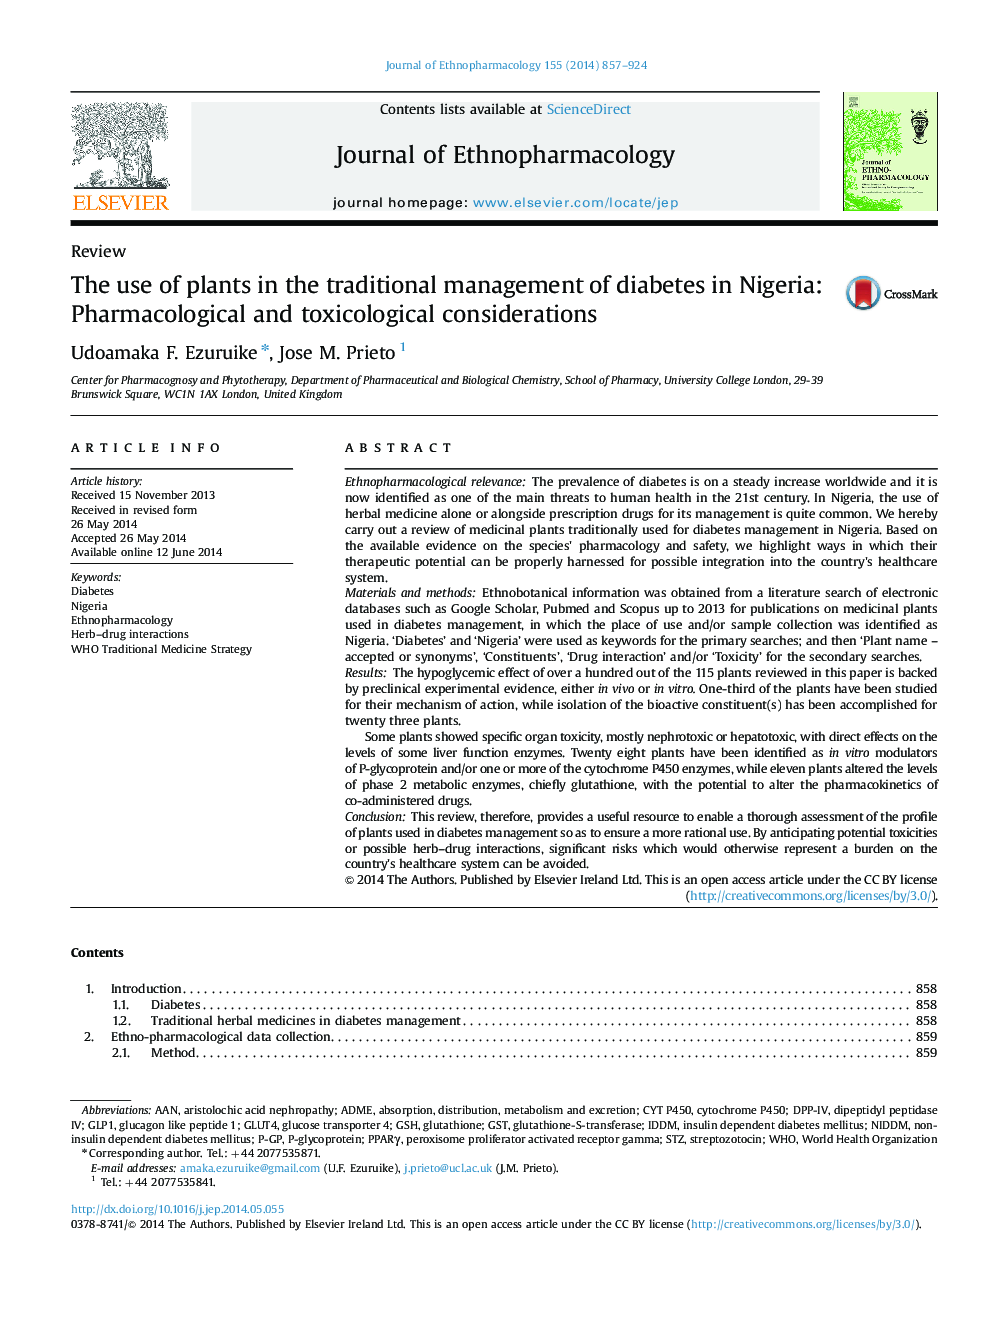 استفاده از گیاهان در مدیریت سنتی دیابت در نیجریه: ملاحظات فارماکولوژی و سم شناسی 